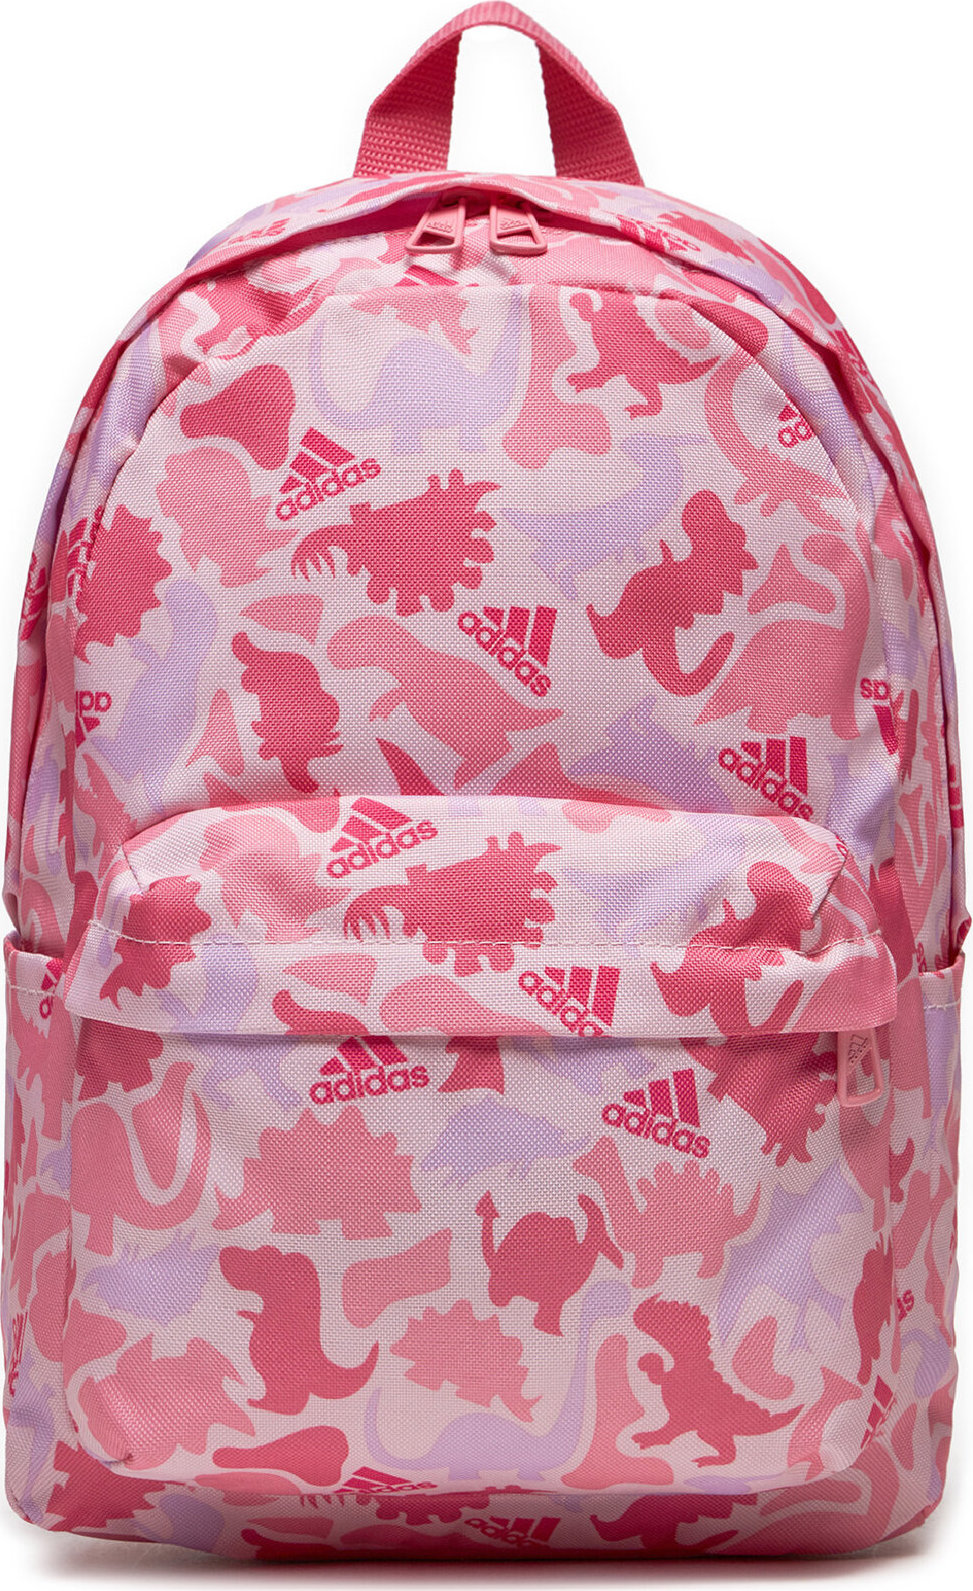 Batoh adidas Printed Backpack Kids IS0923 Pnkfus